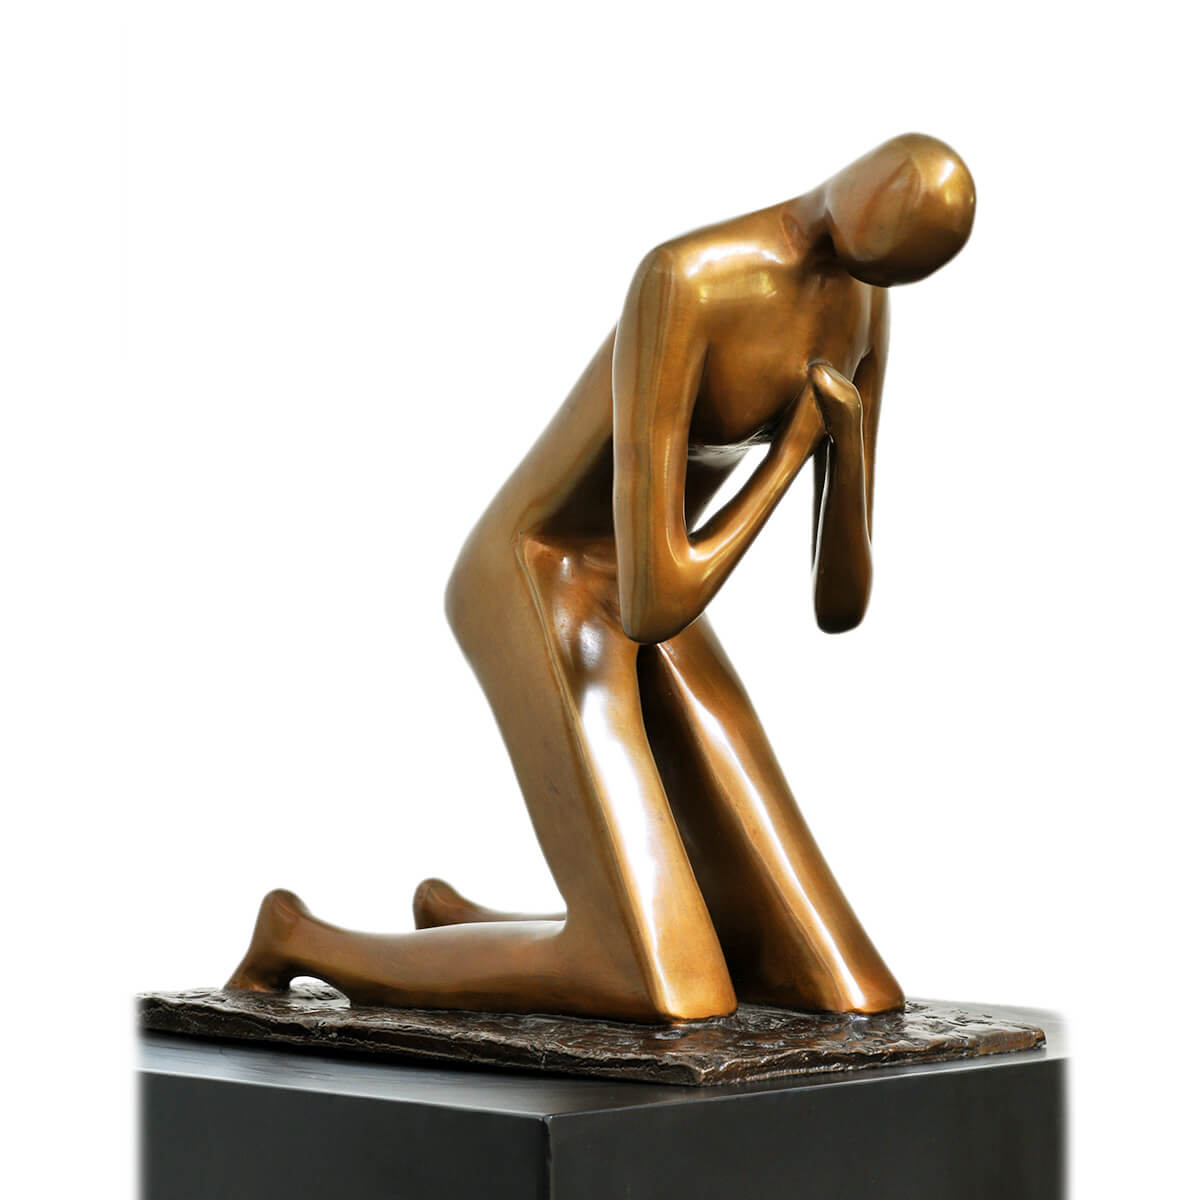 Robert-Helle-Sculpture-Gallery-Prayer-1-1200x1200